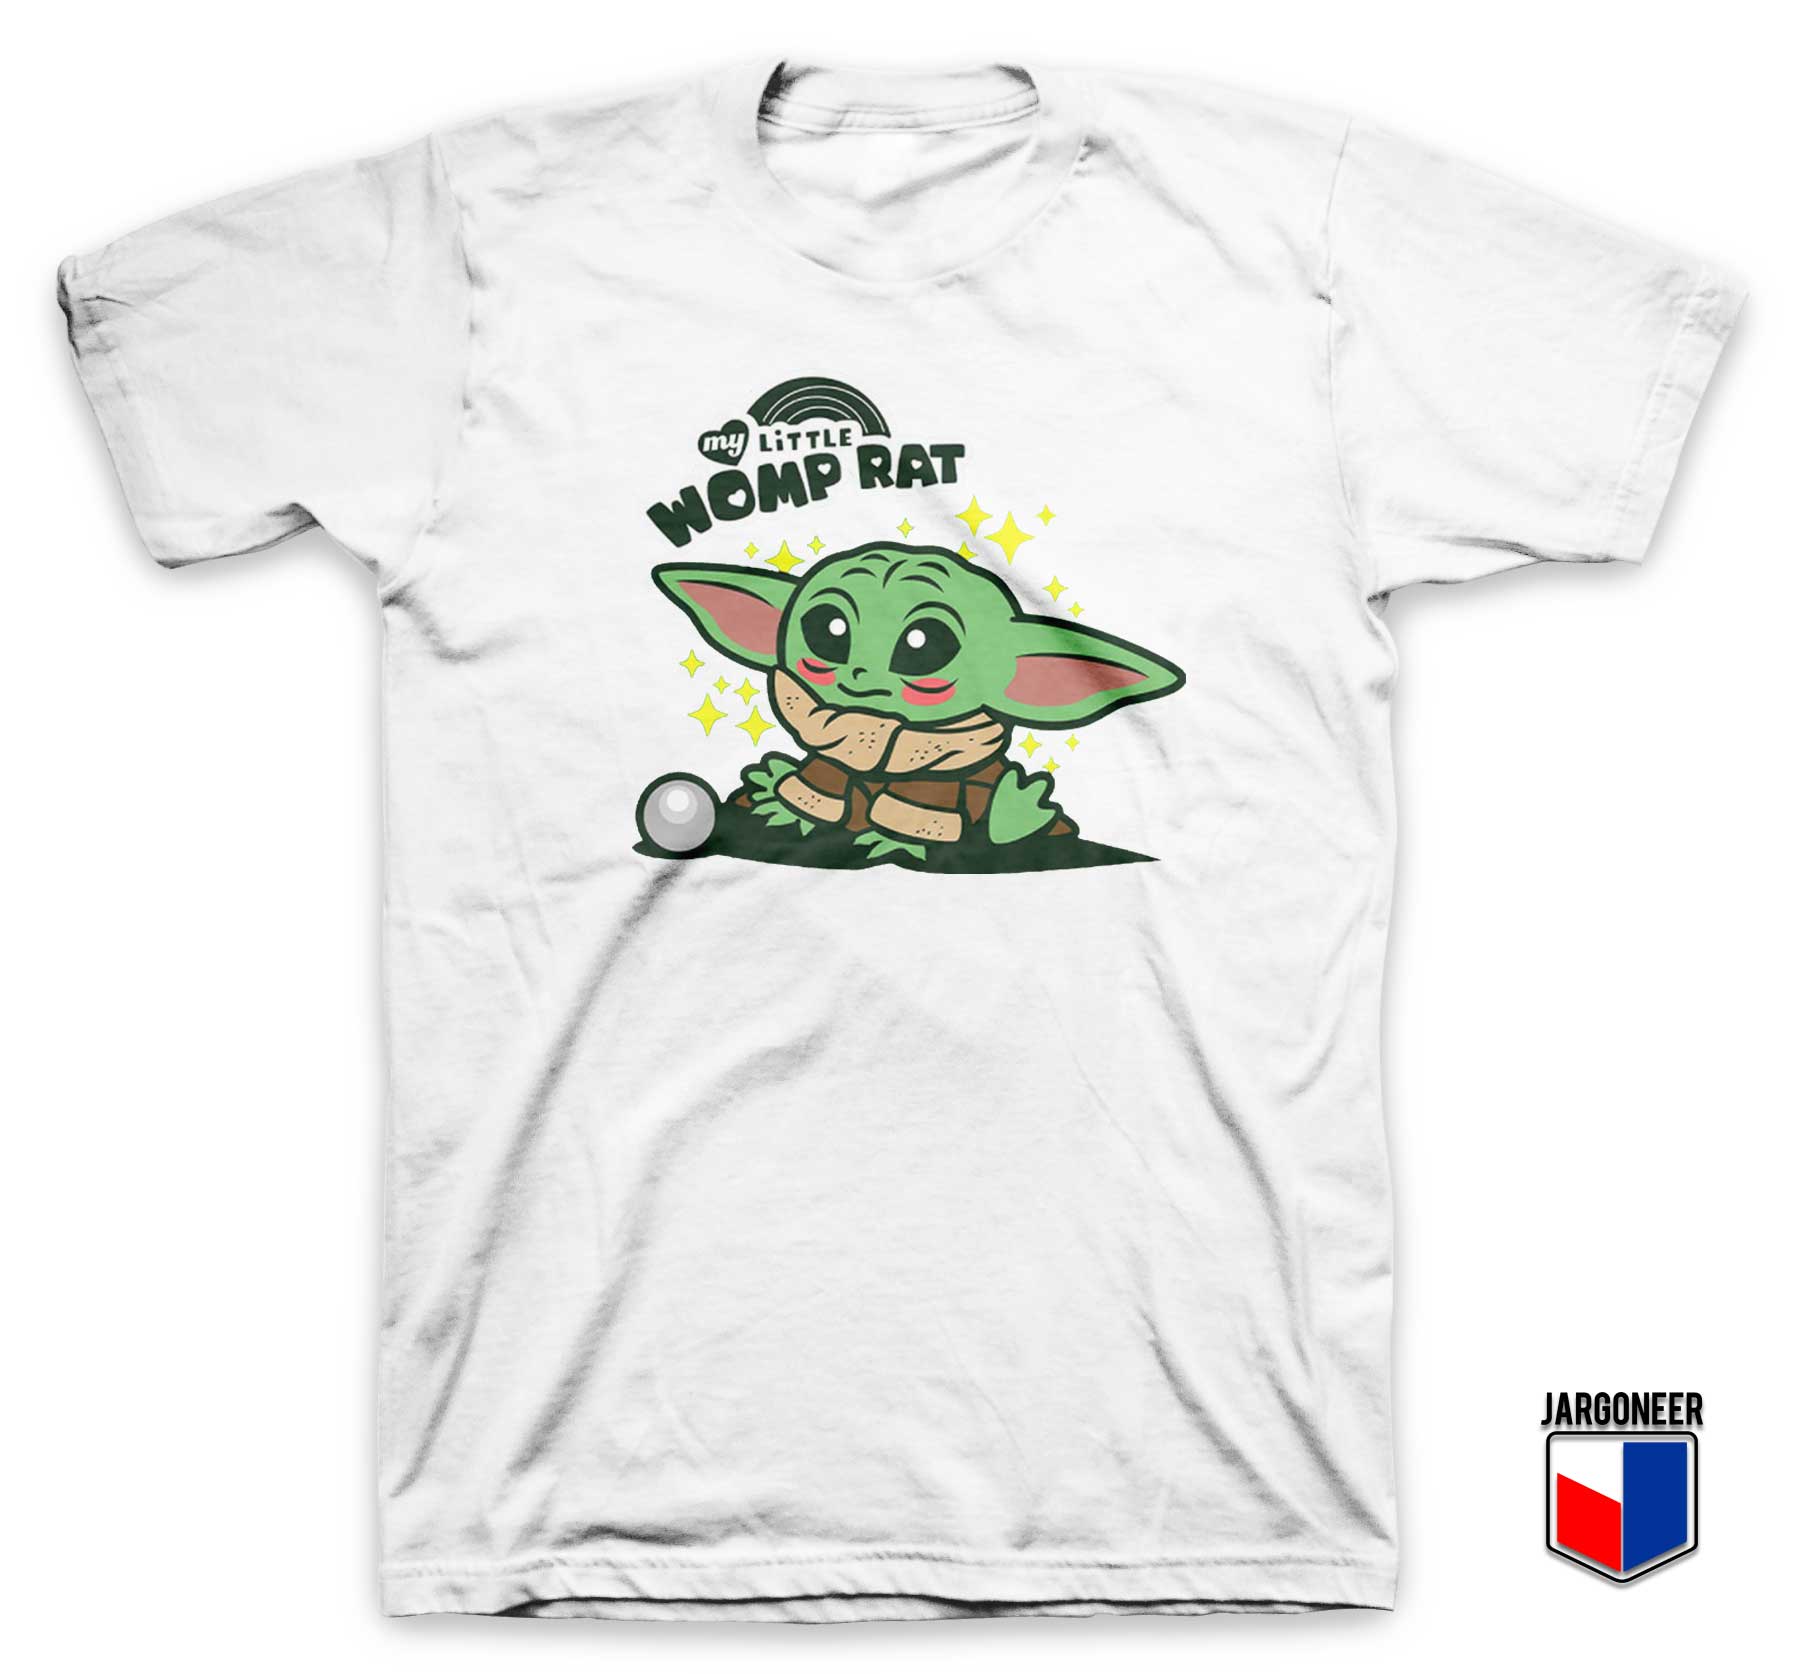 My Little Womp Rat Yoda T Shirt - Shop Unique Graphic Cool Shirt Designs